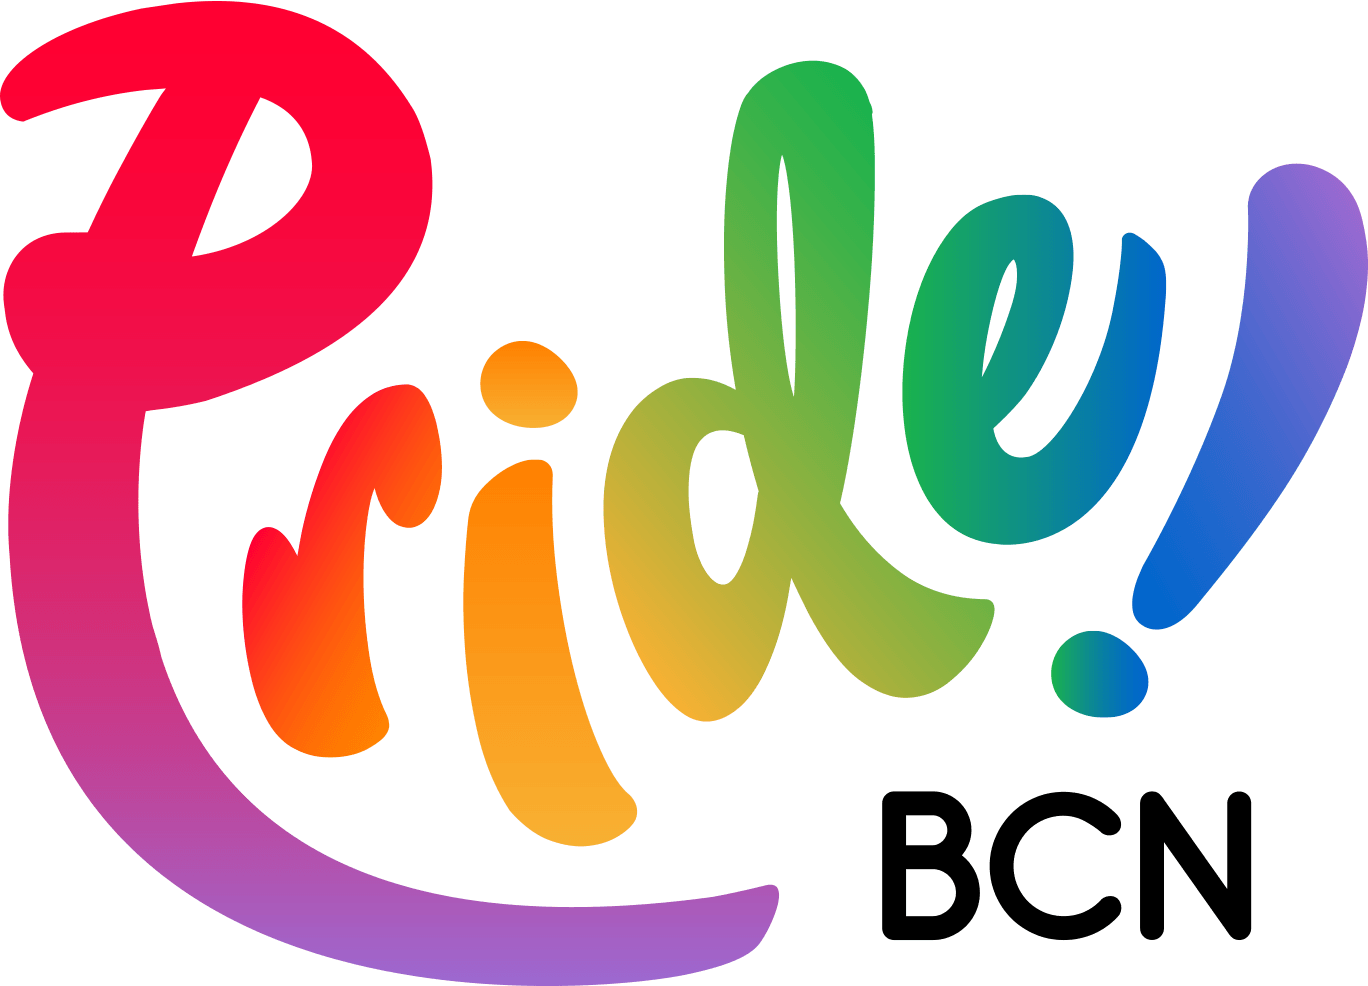 Pride Logo - Home - PRIDE BCN 2019